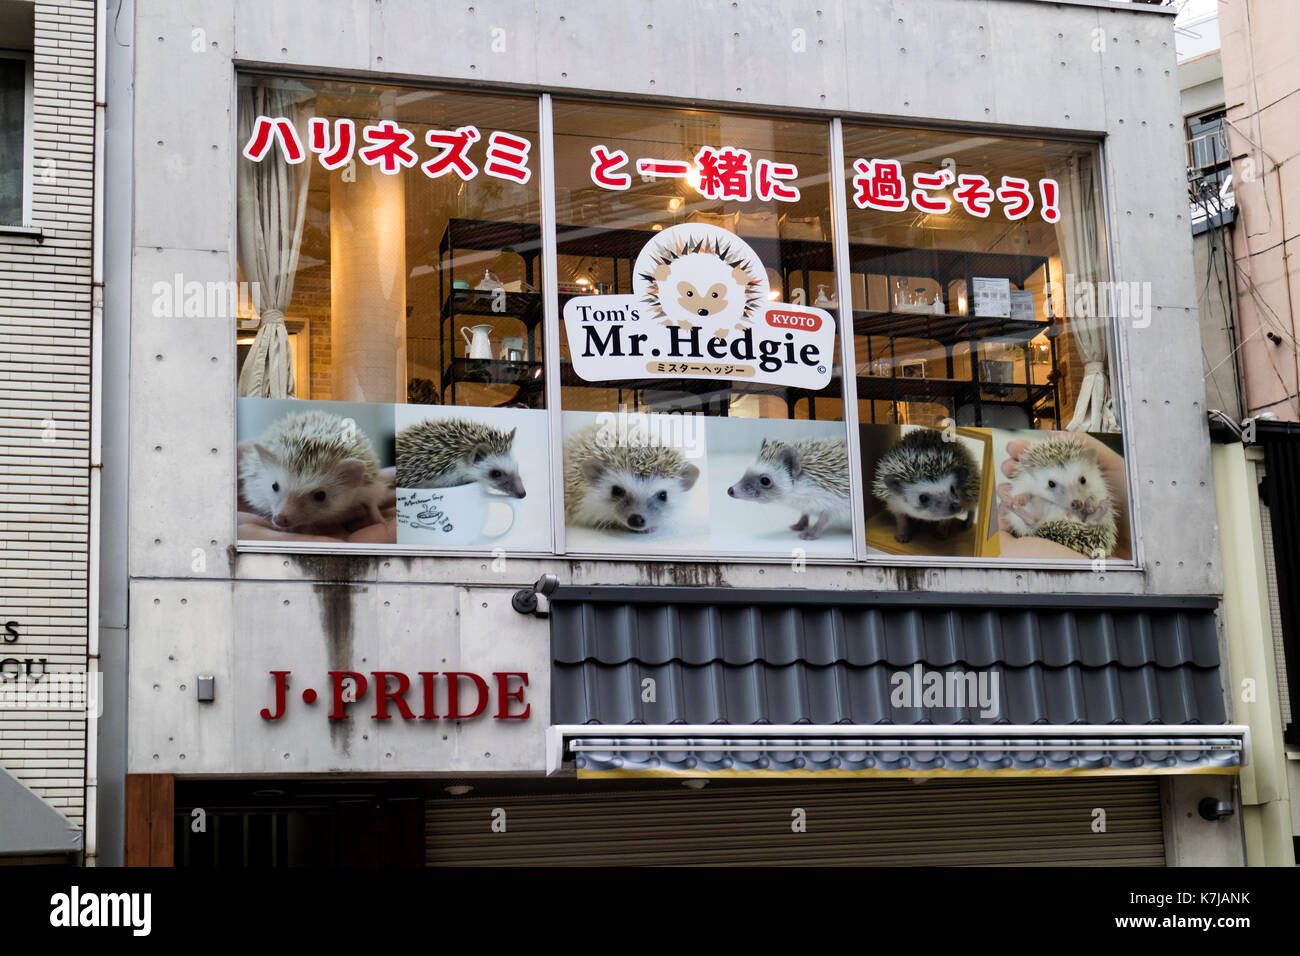 Kyoto, Japón - 16 de mayo de 2017: promoción de un erizo moda-café temático llamado mr. hedgie Foto de stock